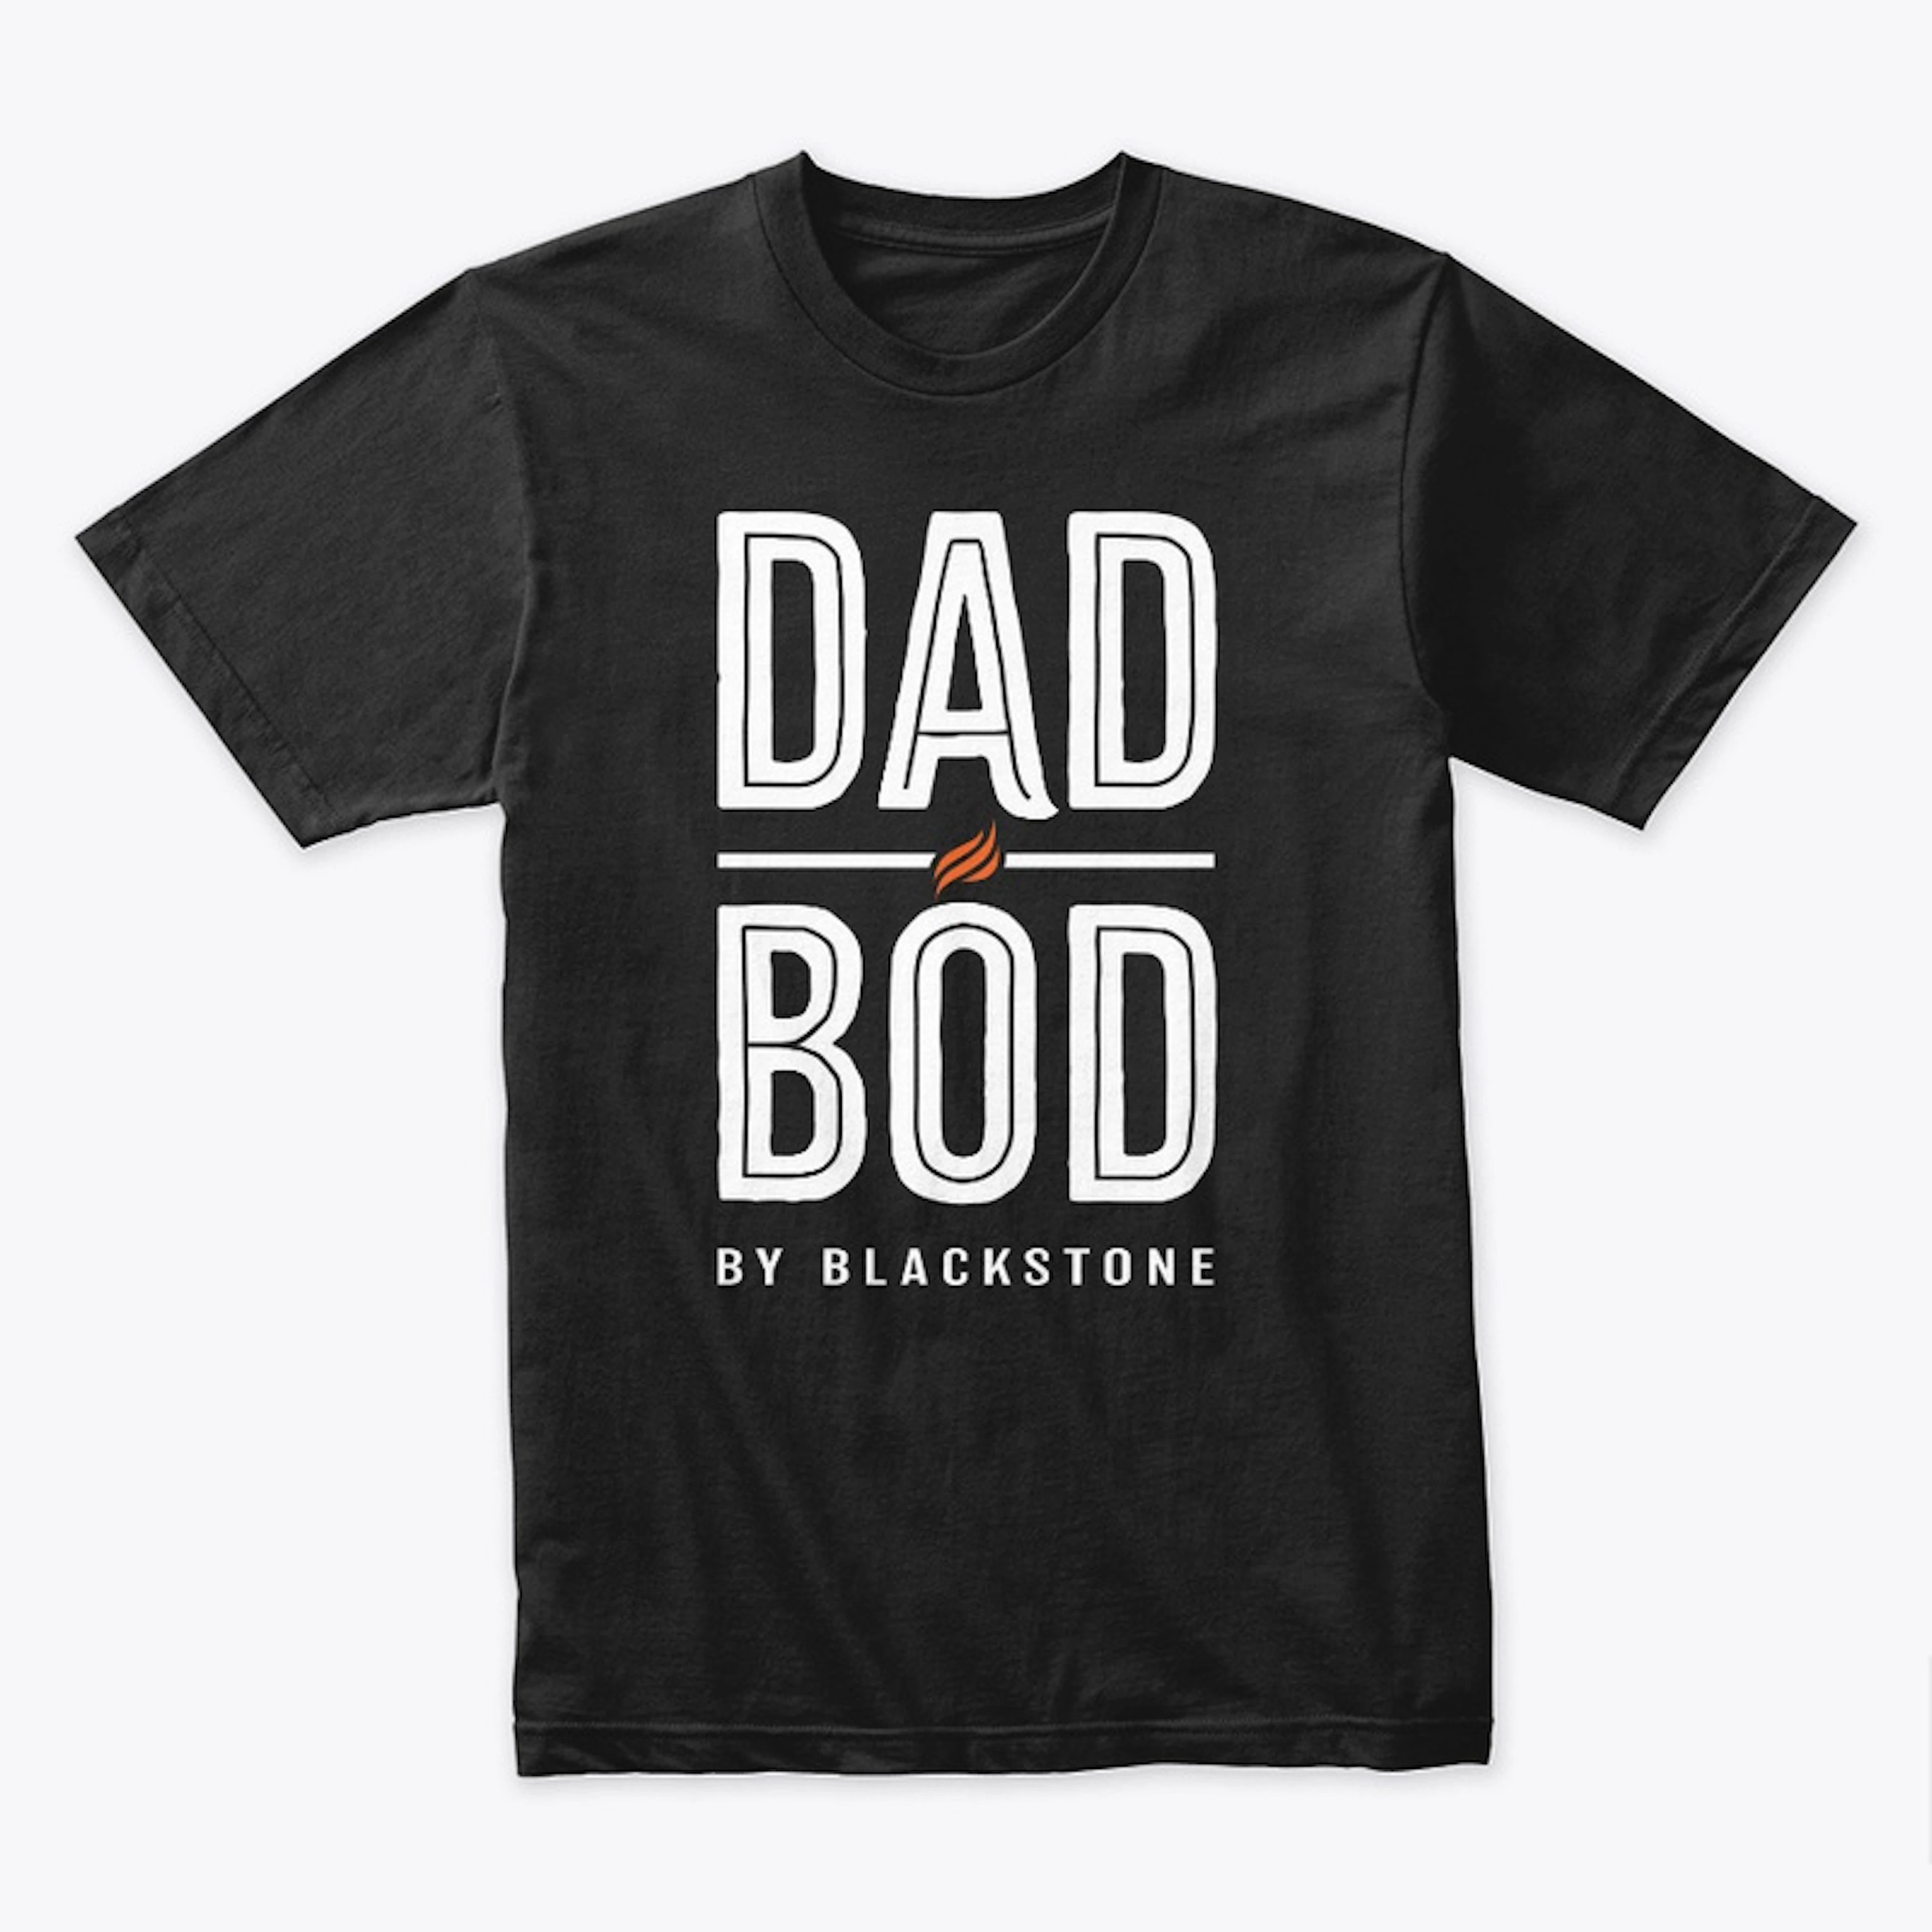 Dad Bod by Blackstone